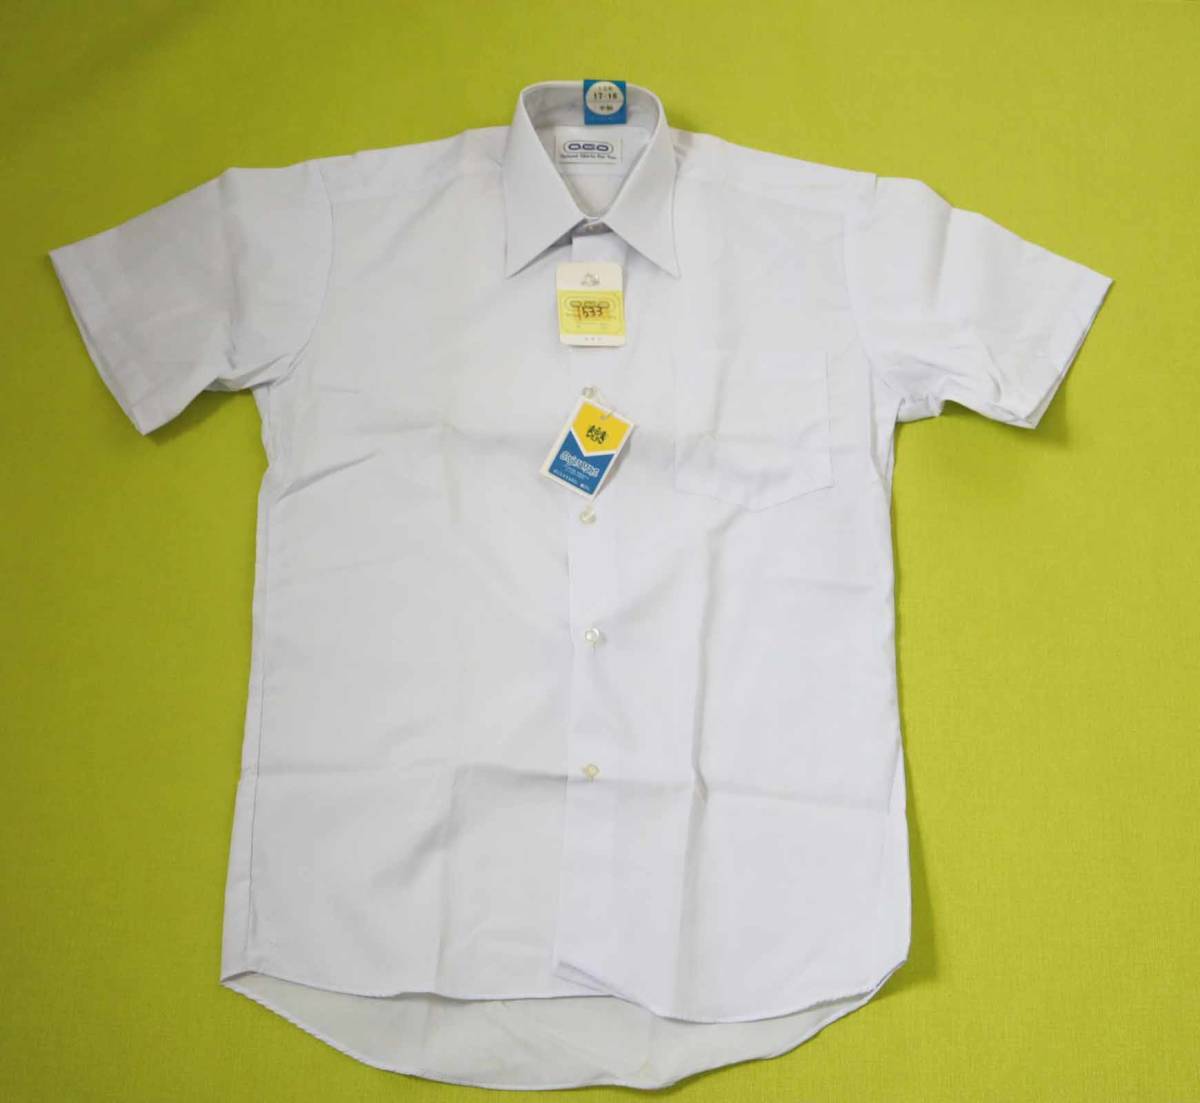 1534-17A スクールシャツ 半袖Yシャツ 学生シャツ 白 165㎝ OGO わけあり 新古品 長期保管品 の画像1